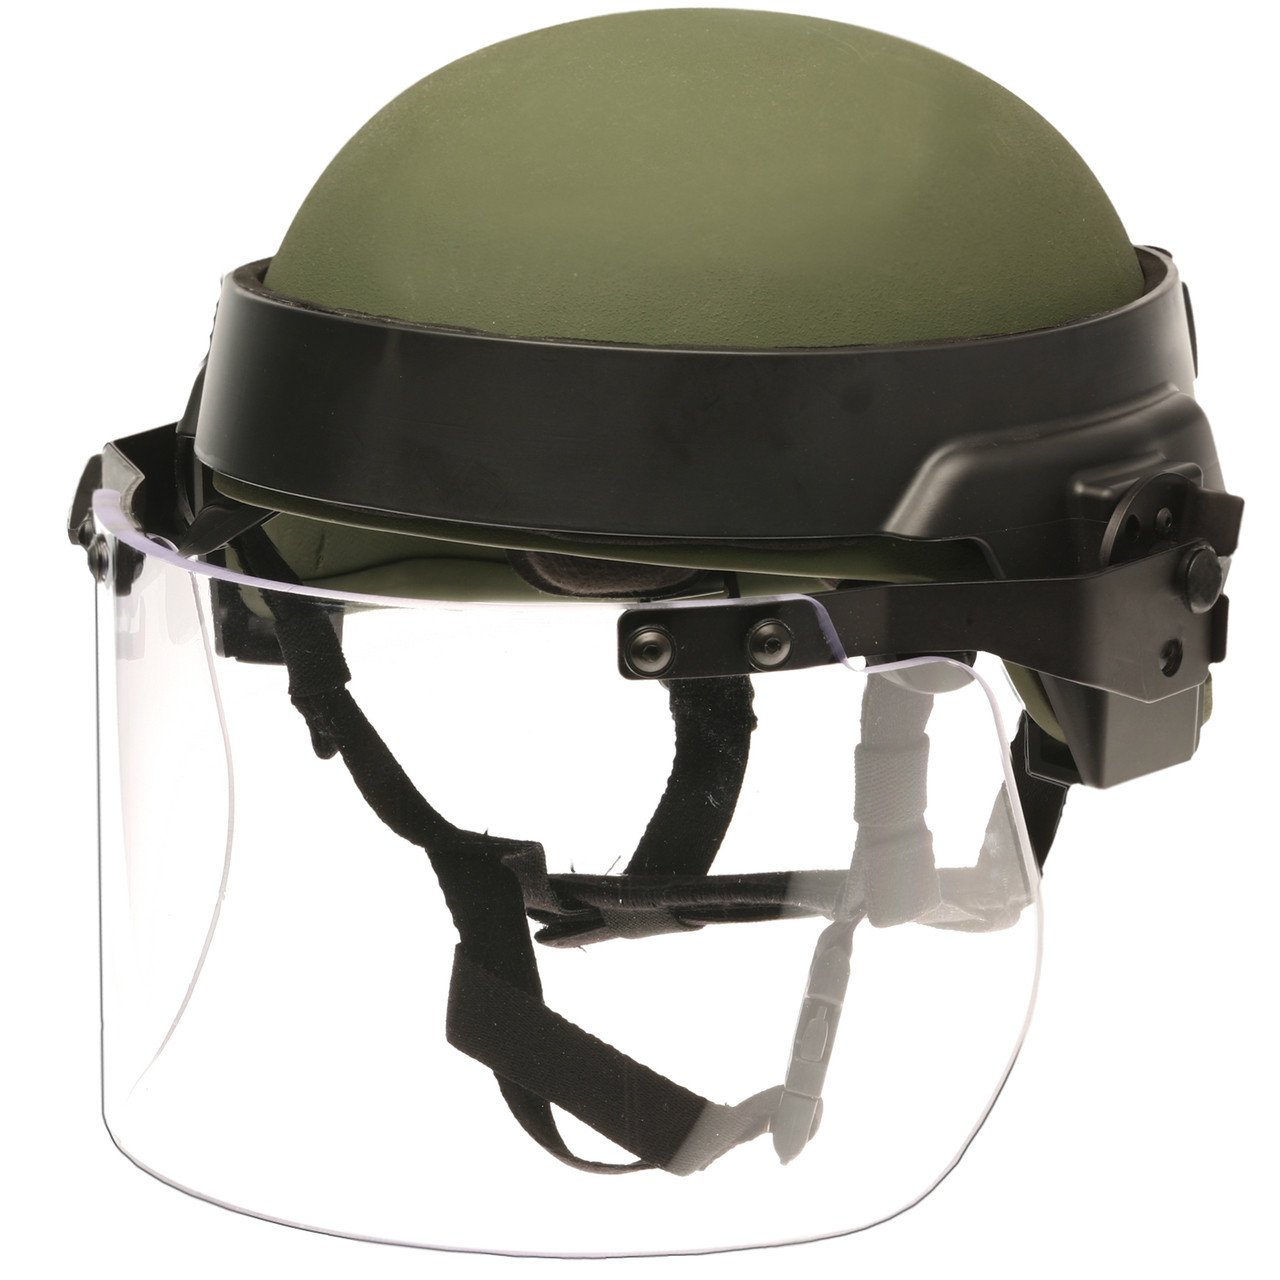 Helmet Face Shield